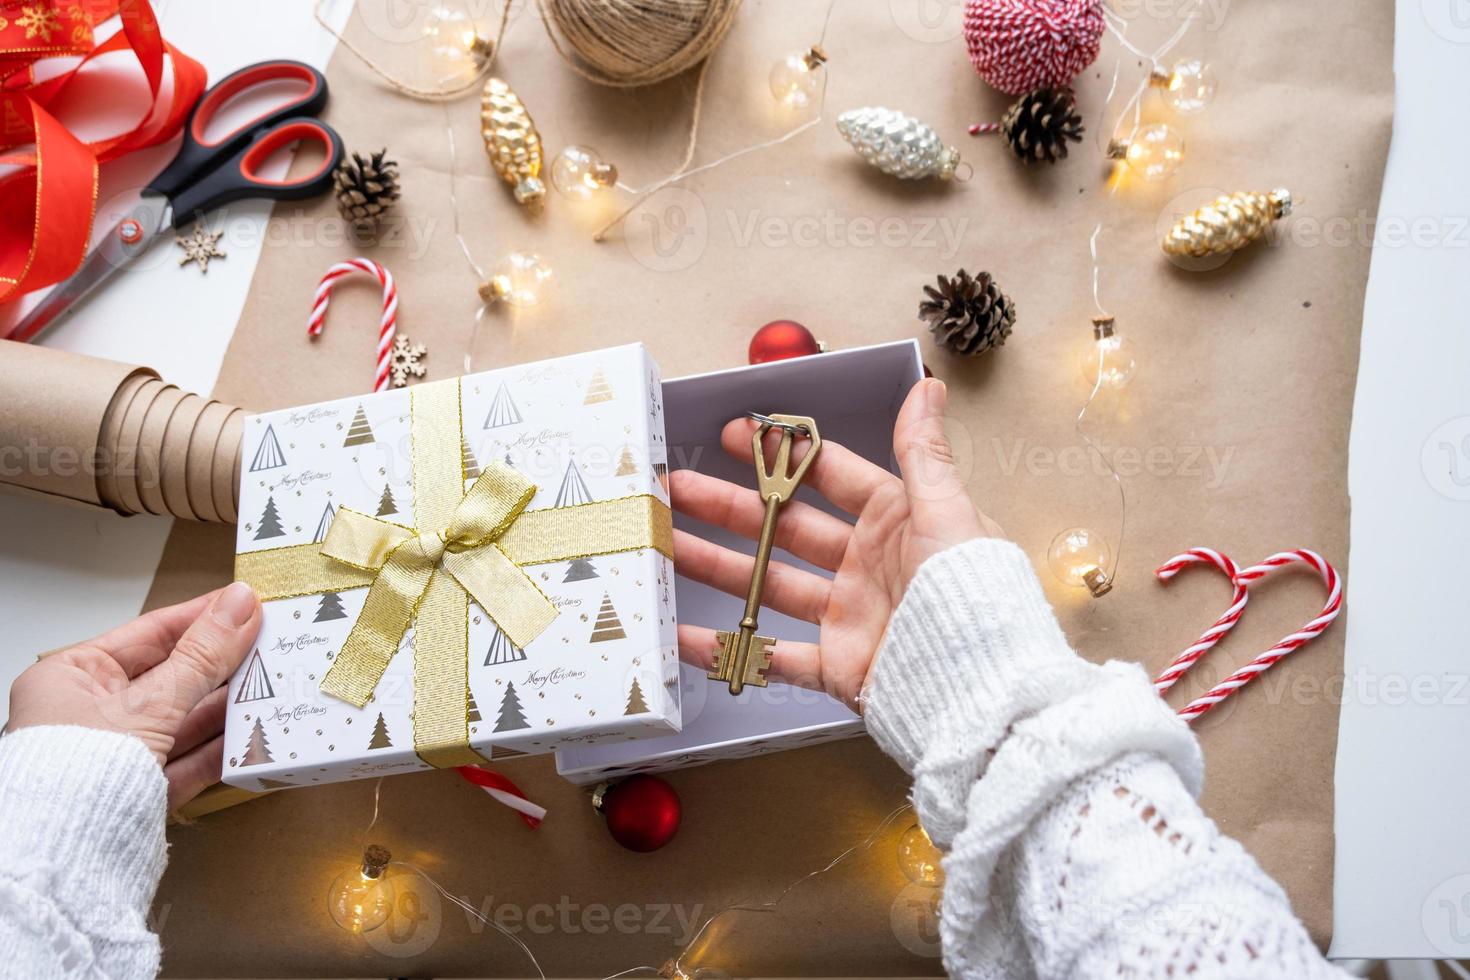 nyckel till hus med Nyckelring på mysigt Hem i gåva låda med jul dekor förpackning. packa närvarande för ny år, jul. byggnad, projekt, rör på sig till ny hus, inteckning, hyra, inköp verklig egendom foto